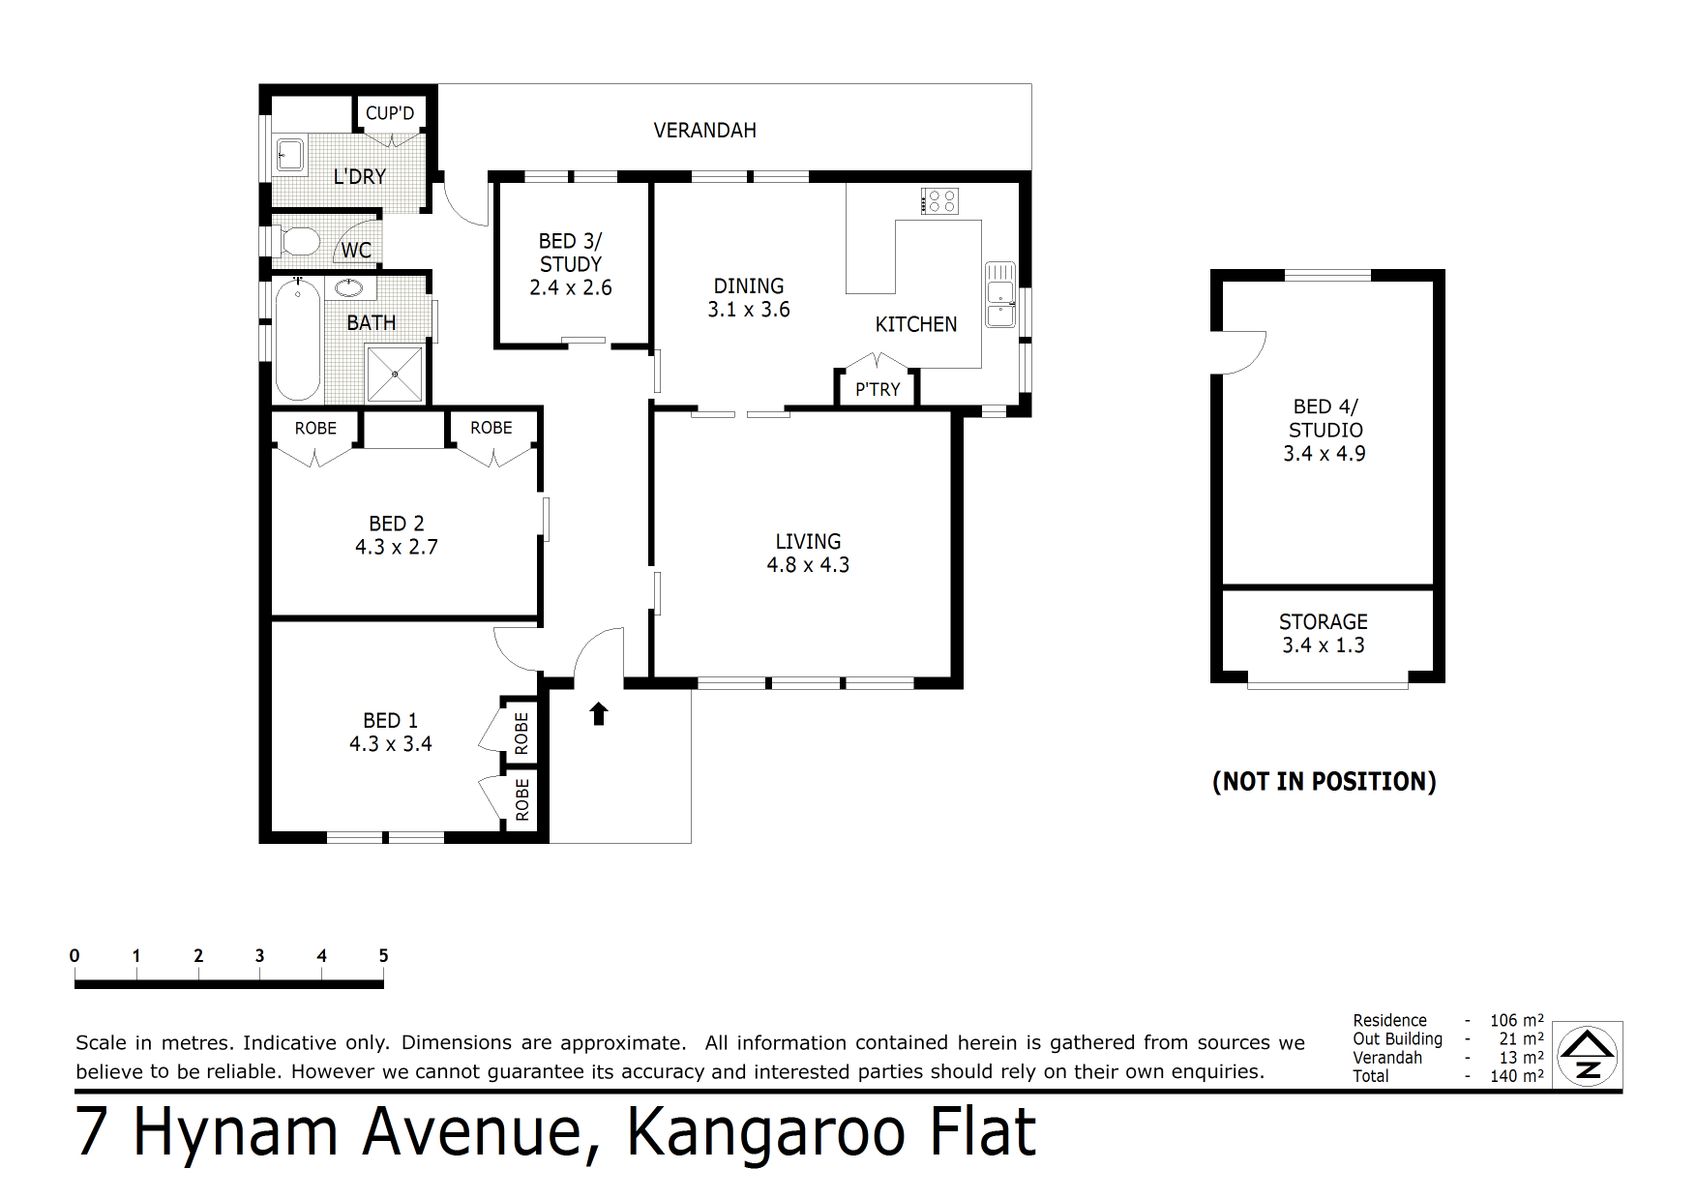 7 Hynam Avenue Kangaroo Flat (24 NOV 2021) 127sqm